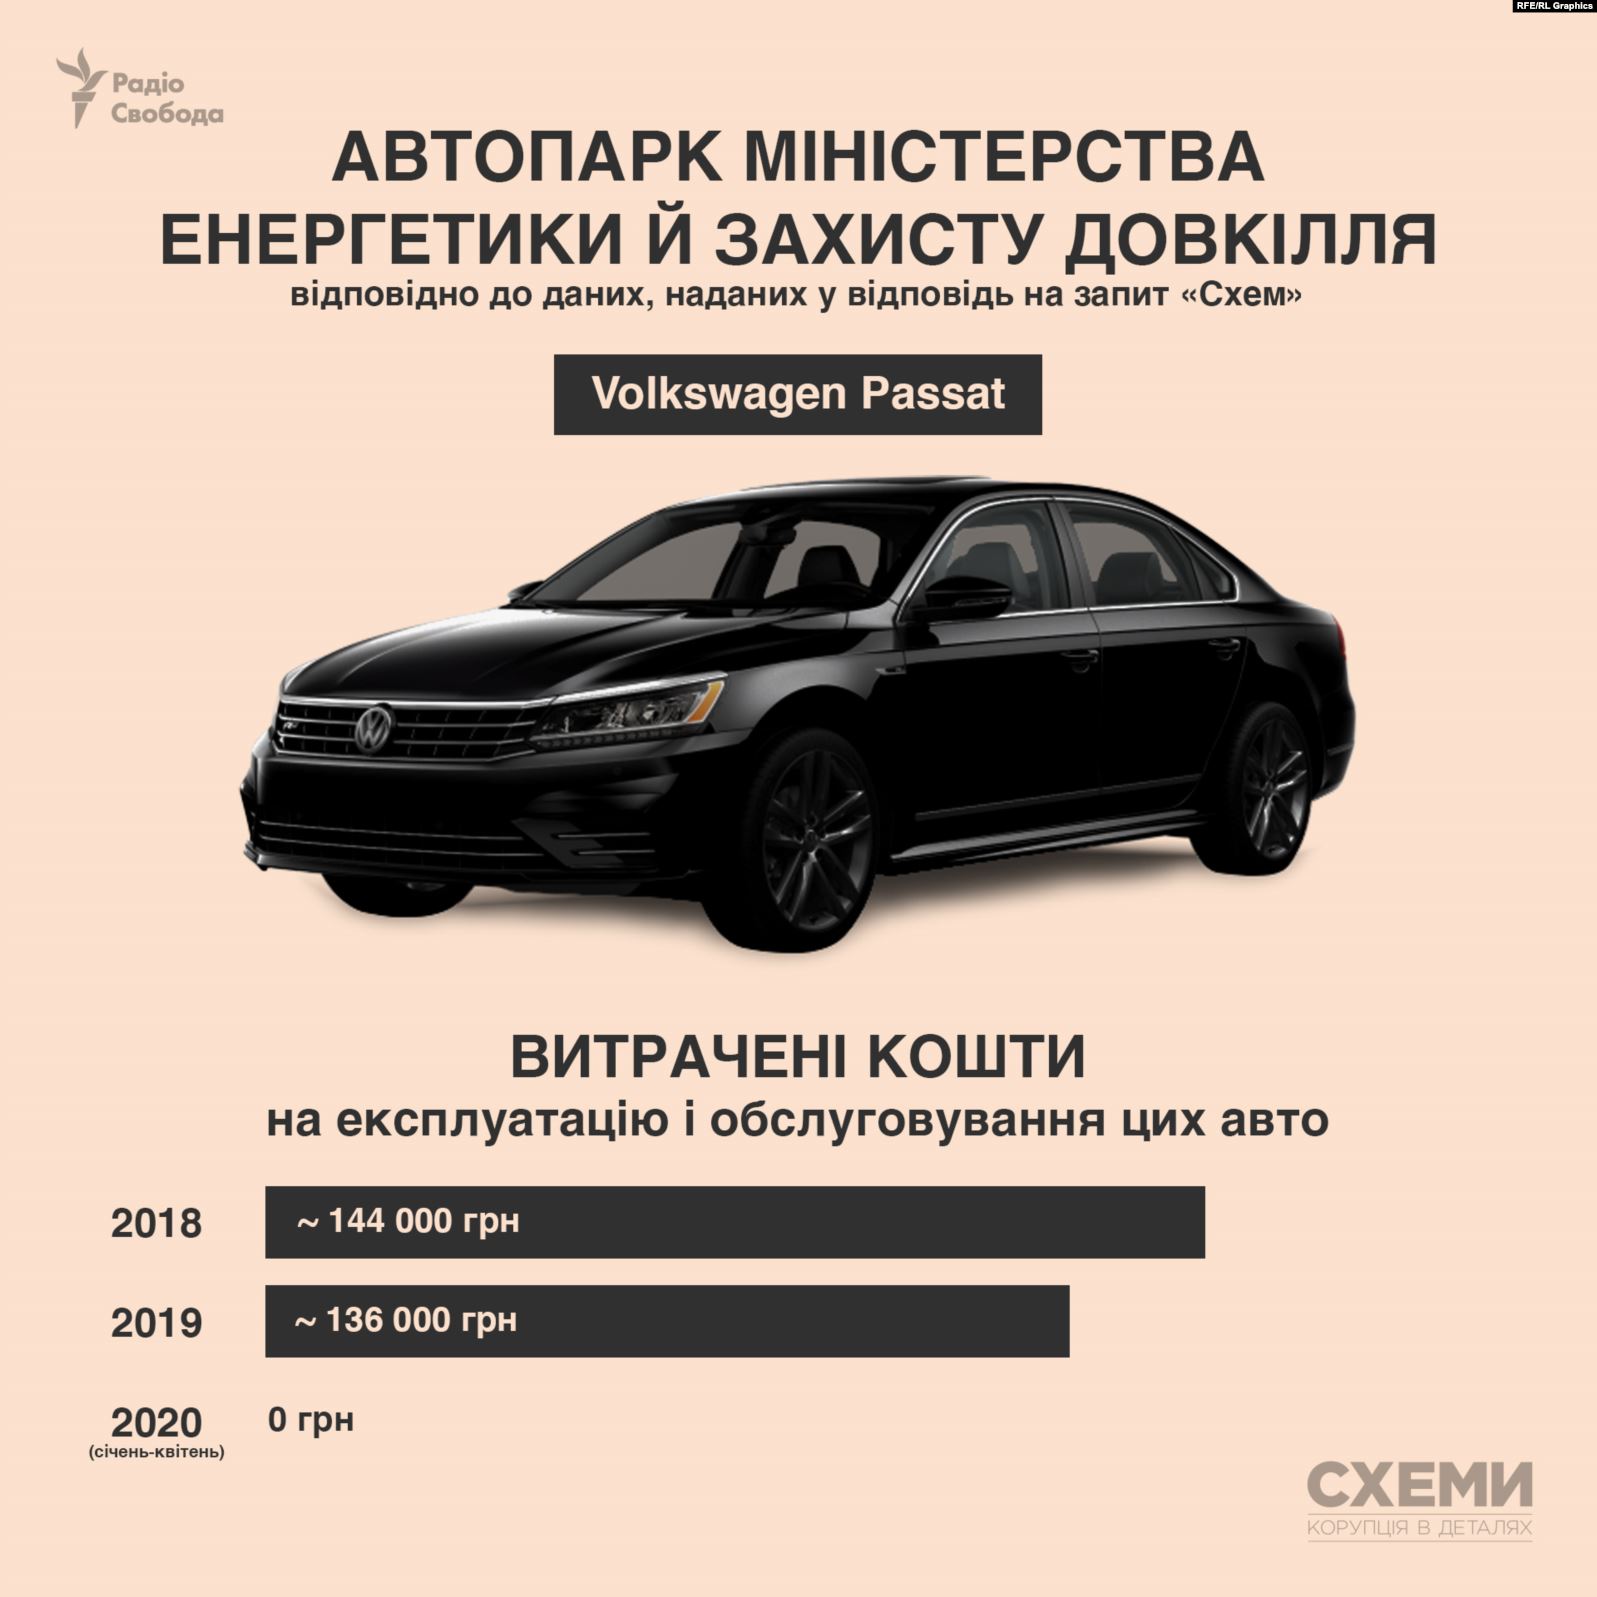 Какие автомобили числятся в автопарке Верховной Рады и Кабмина